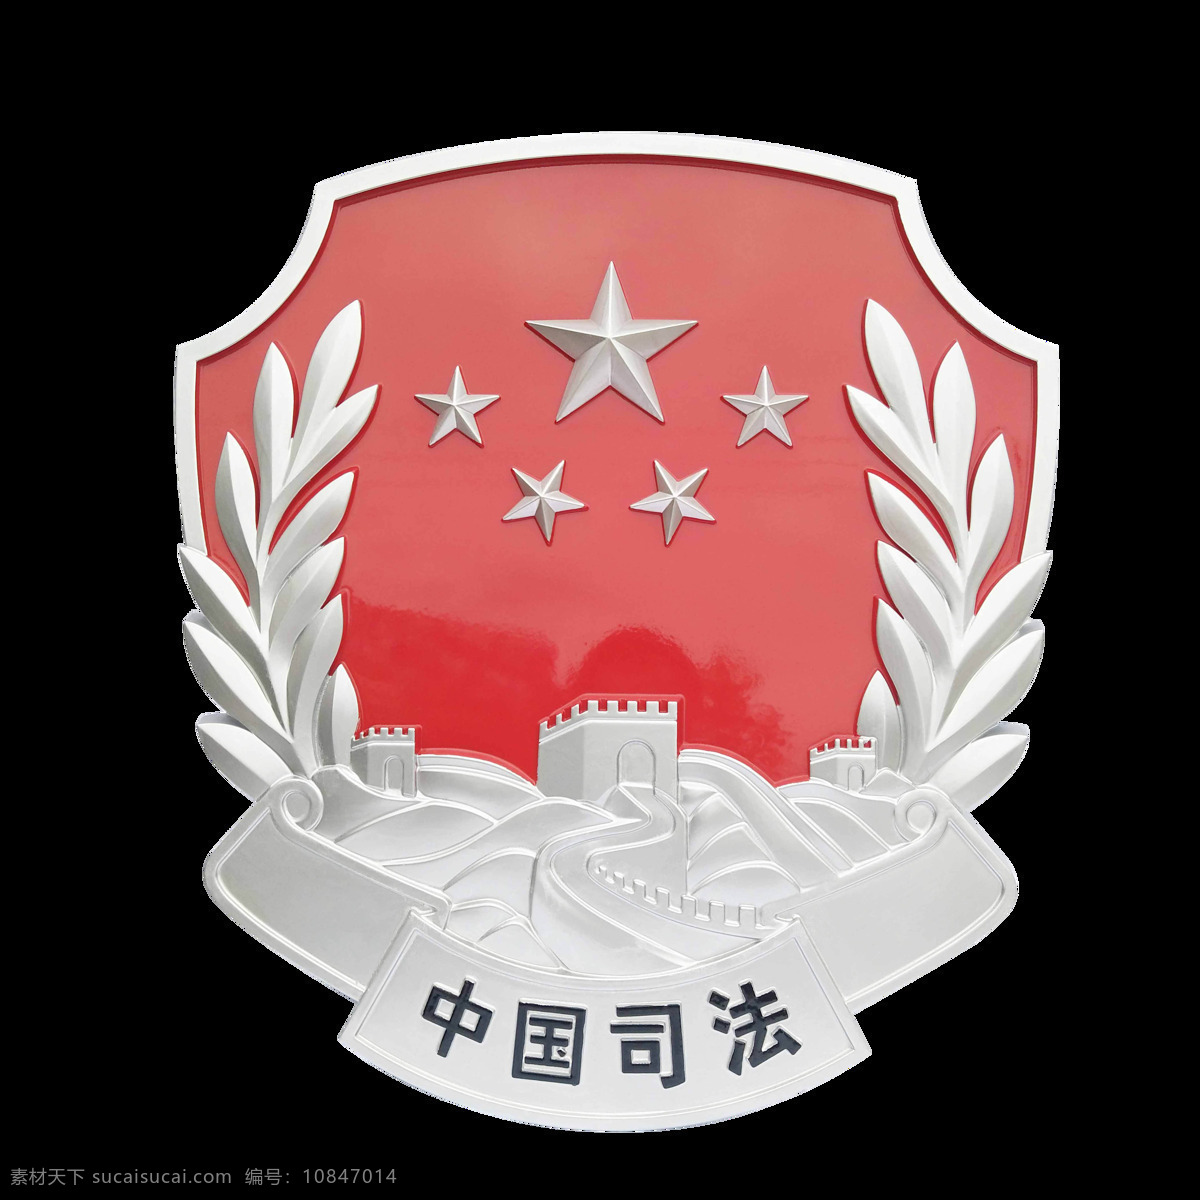 中国 司法局 logo 标志 司法局标志 中国司法局 司法标志 司法logo 标志logo 标志图标 公共标识标志